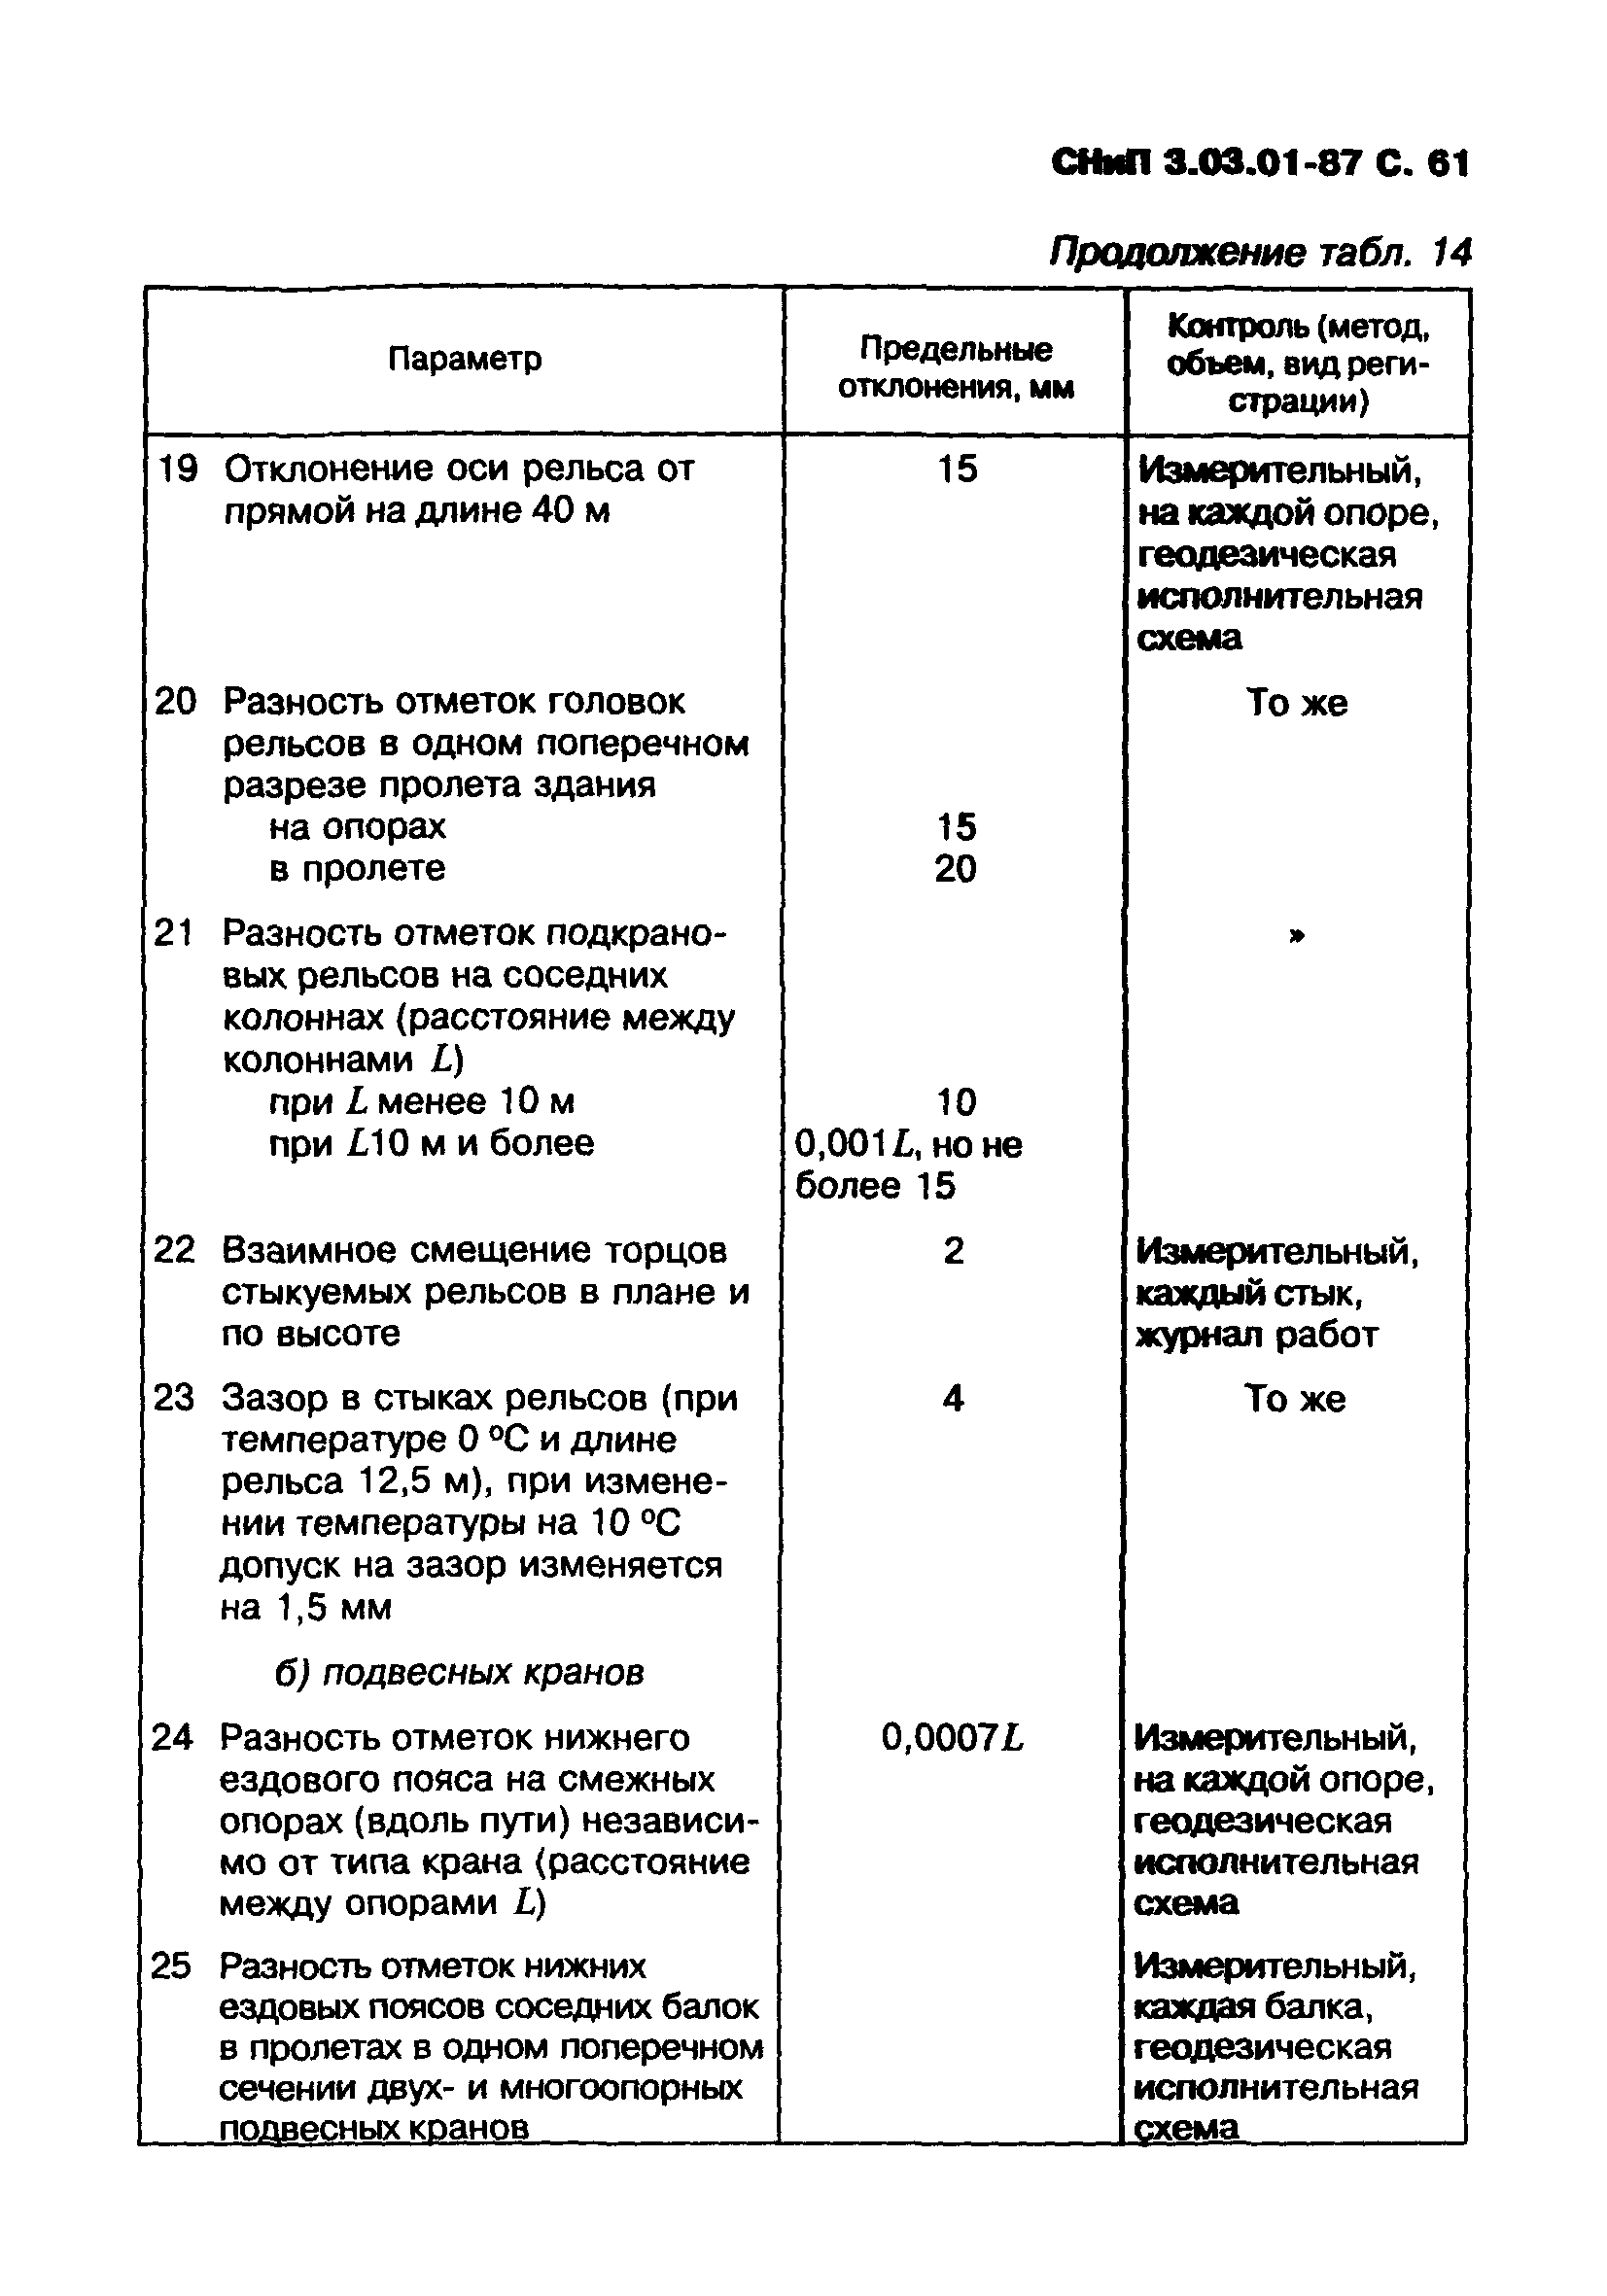 СНИП 3-03-01-87 несущие ограждающие конструкции таблица. СНИП 3.03.01-87 табл. 24. (СНИП 3.03.01-87, приложение 1).